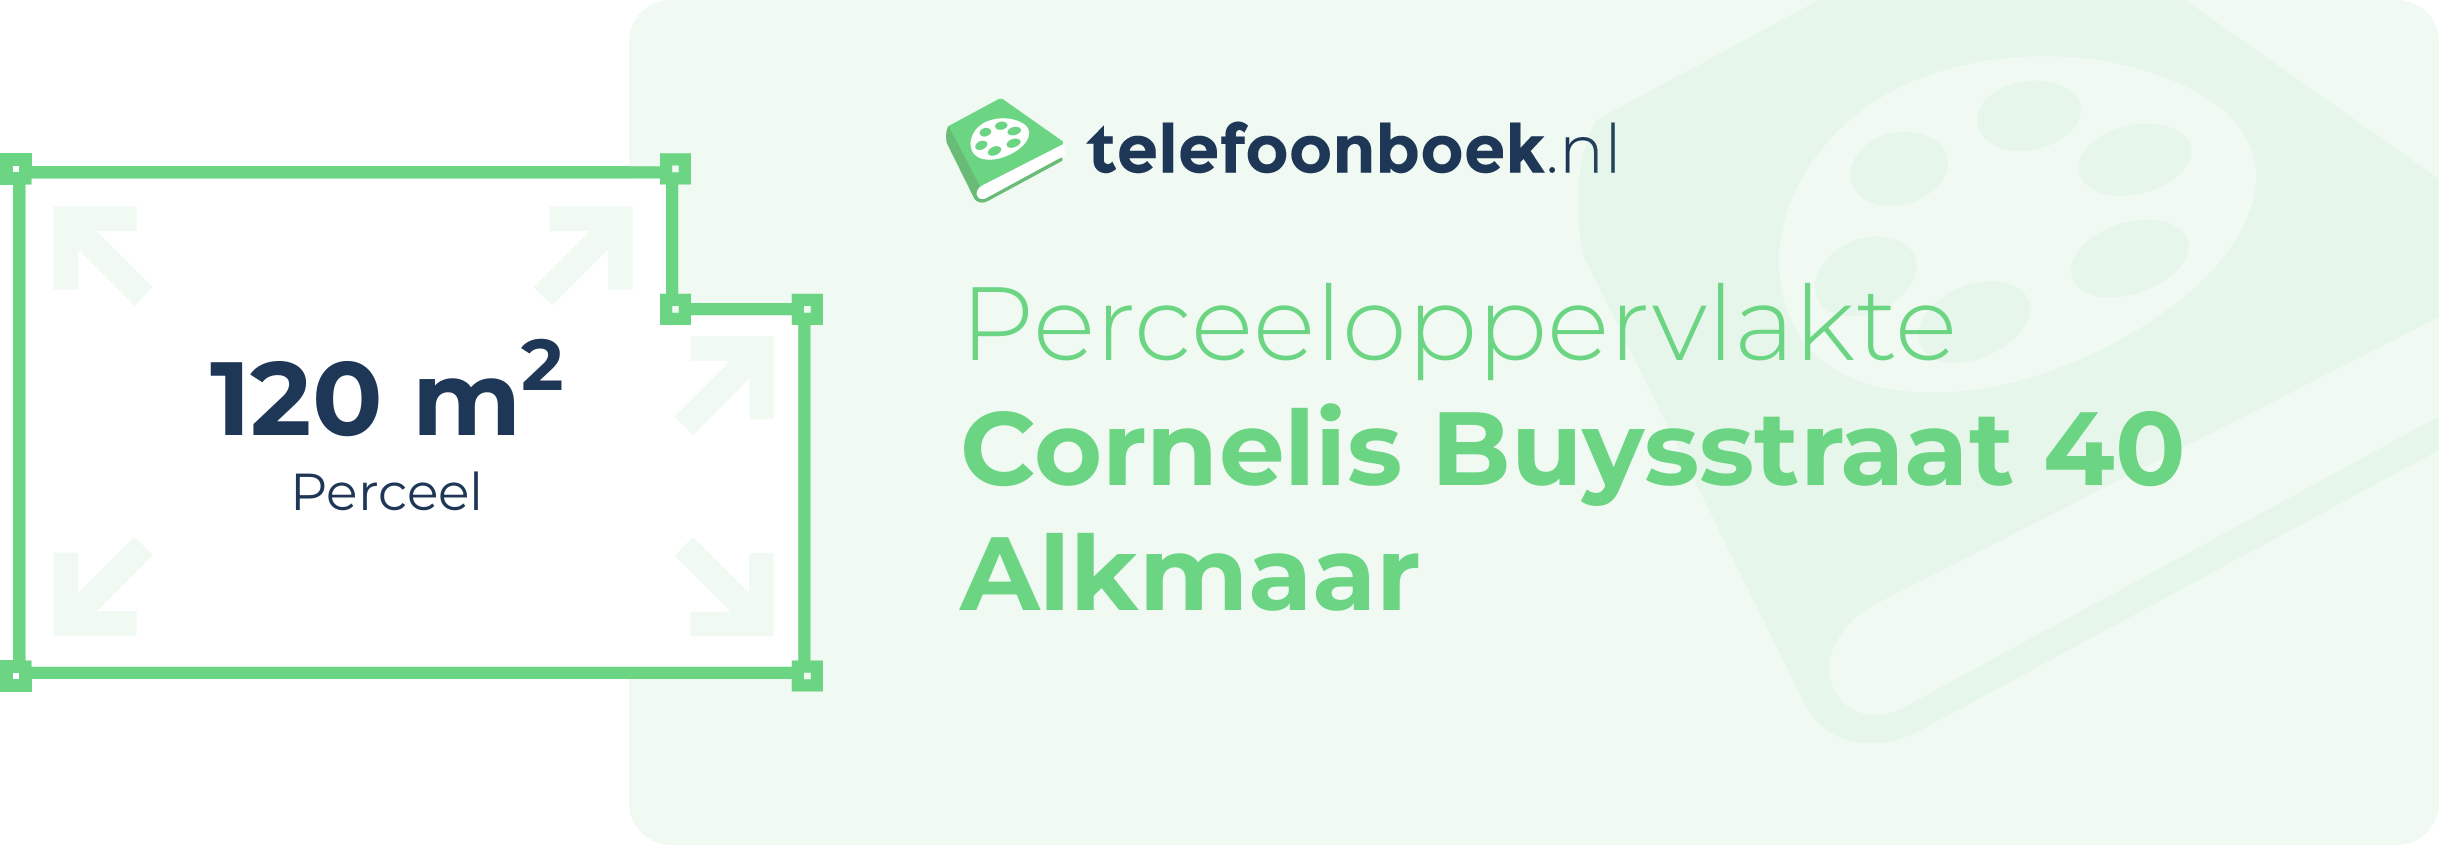 Perceeloppervlakte Cornelis Buysstraat 40 Alkmaar